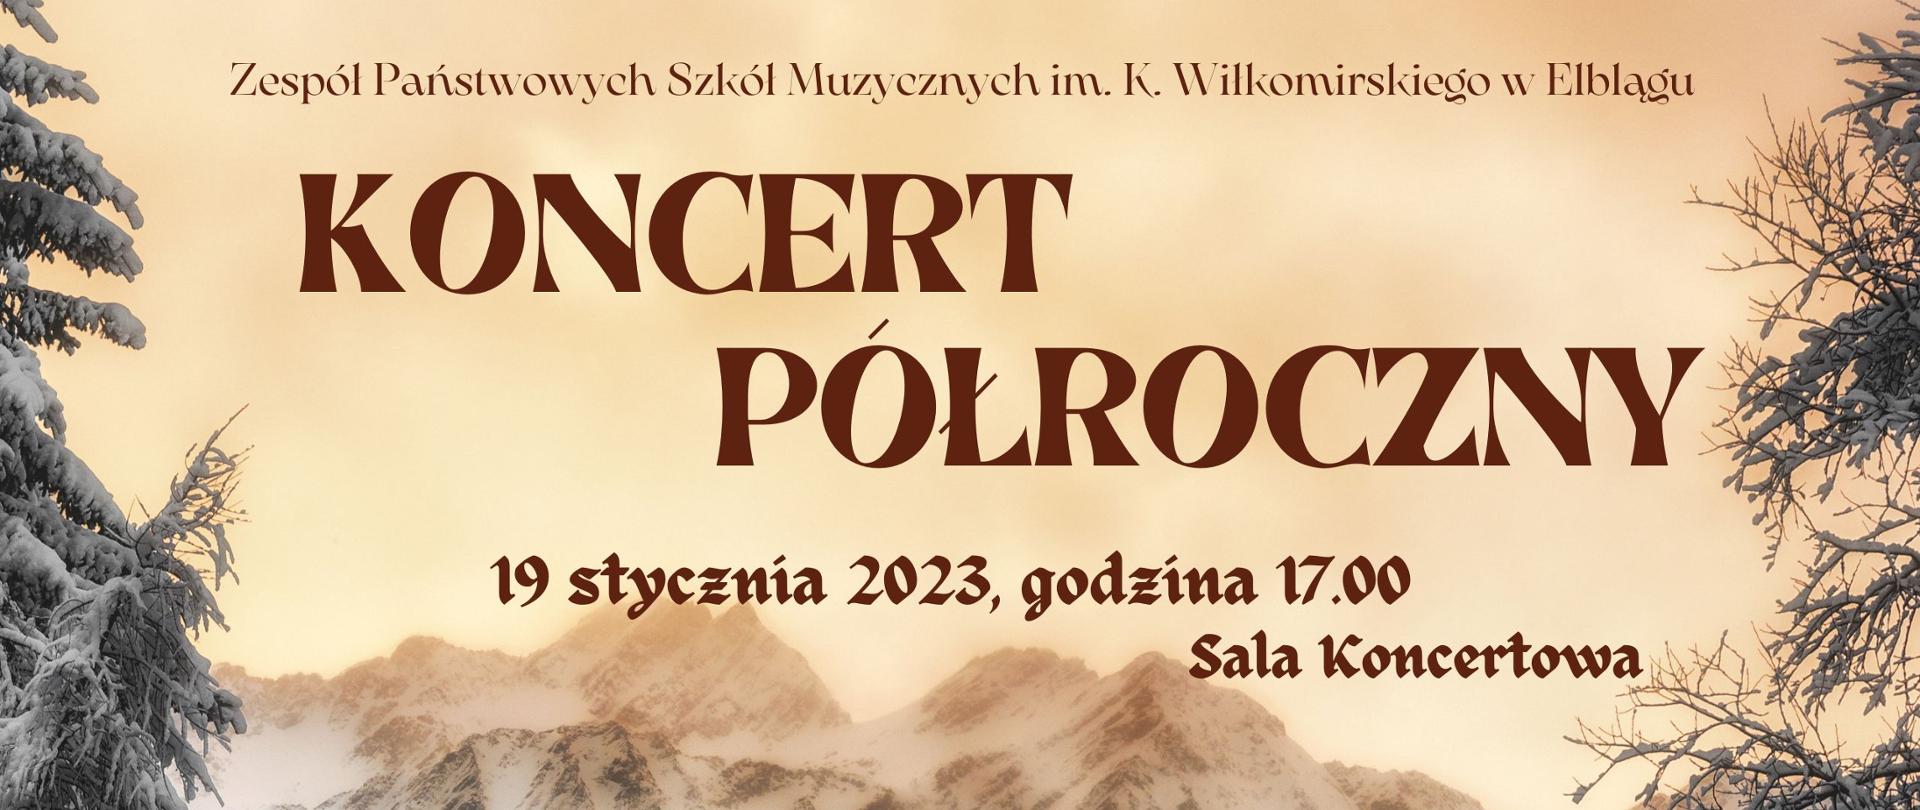 zdjęcie przedstawiające panoramę górską, duży napis koncert półroczny, 19 stycznia 2023, godzina 17.00 sala koncertowa